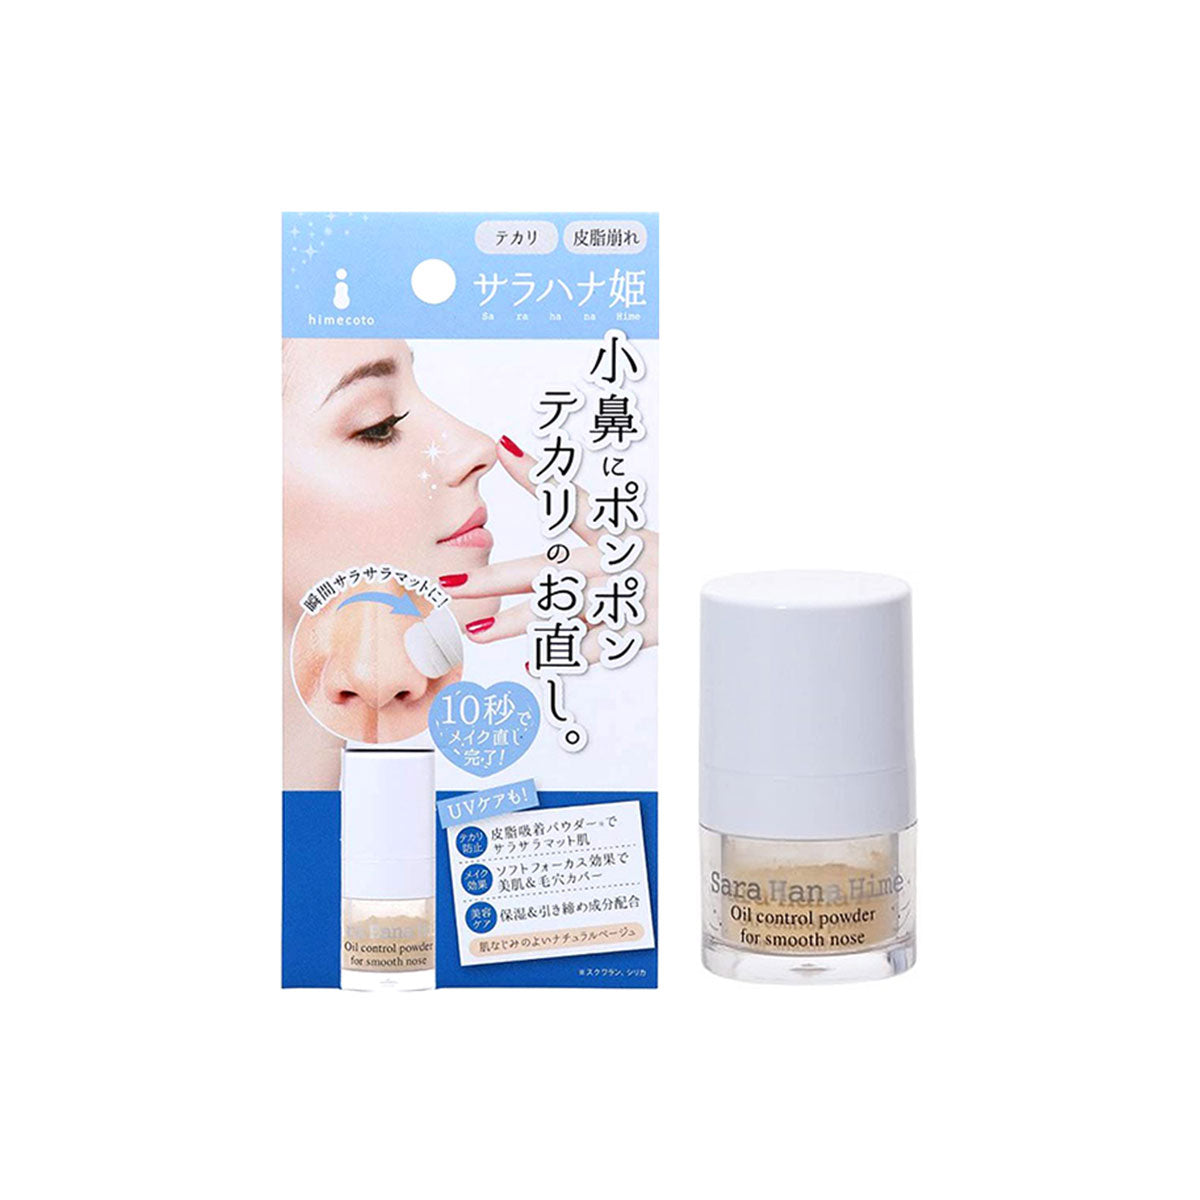 Himecoto Sara Hana Nose Oil Control Powder 1.8g